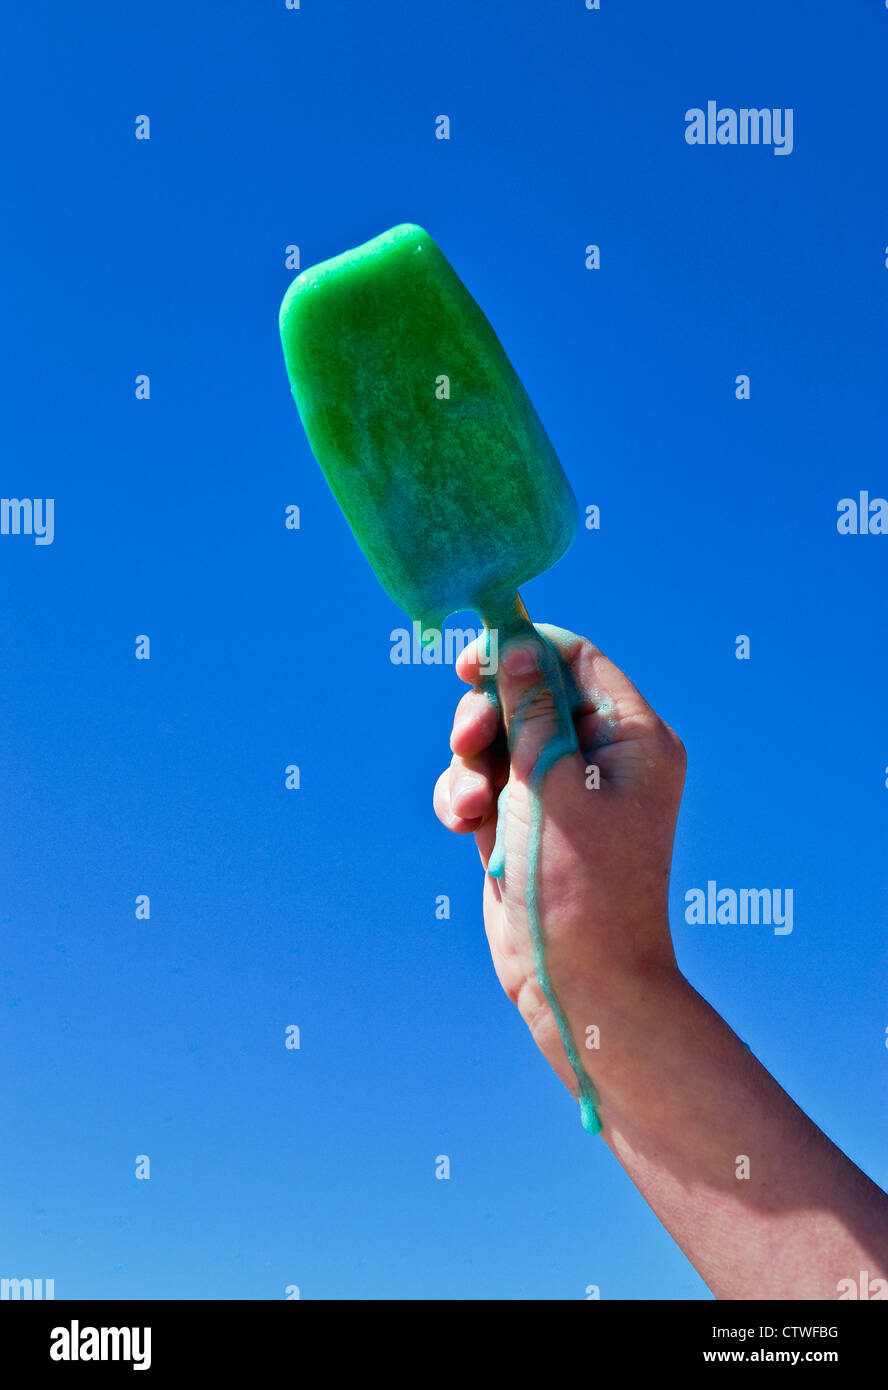 Melting popsicle. Stock Photo